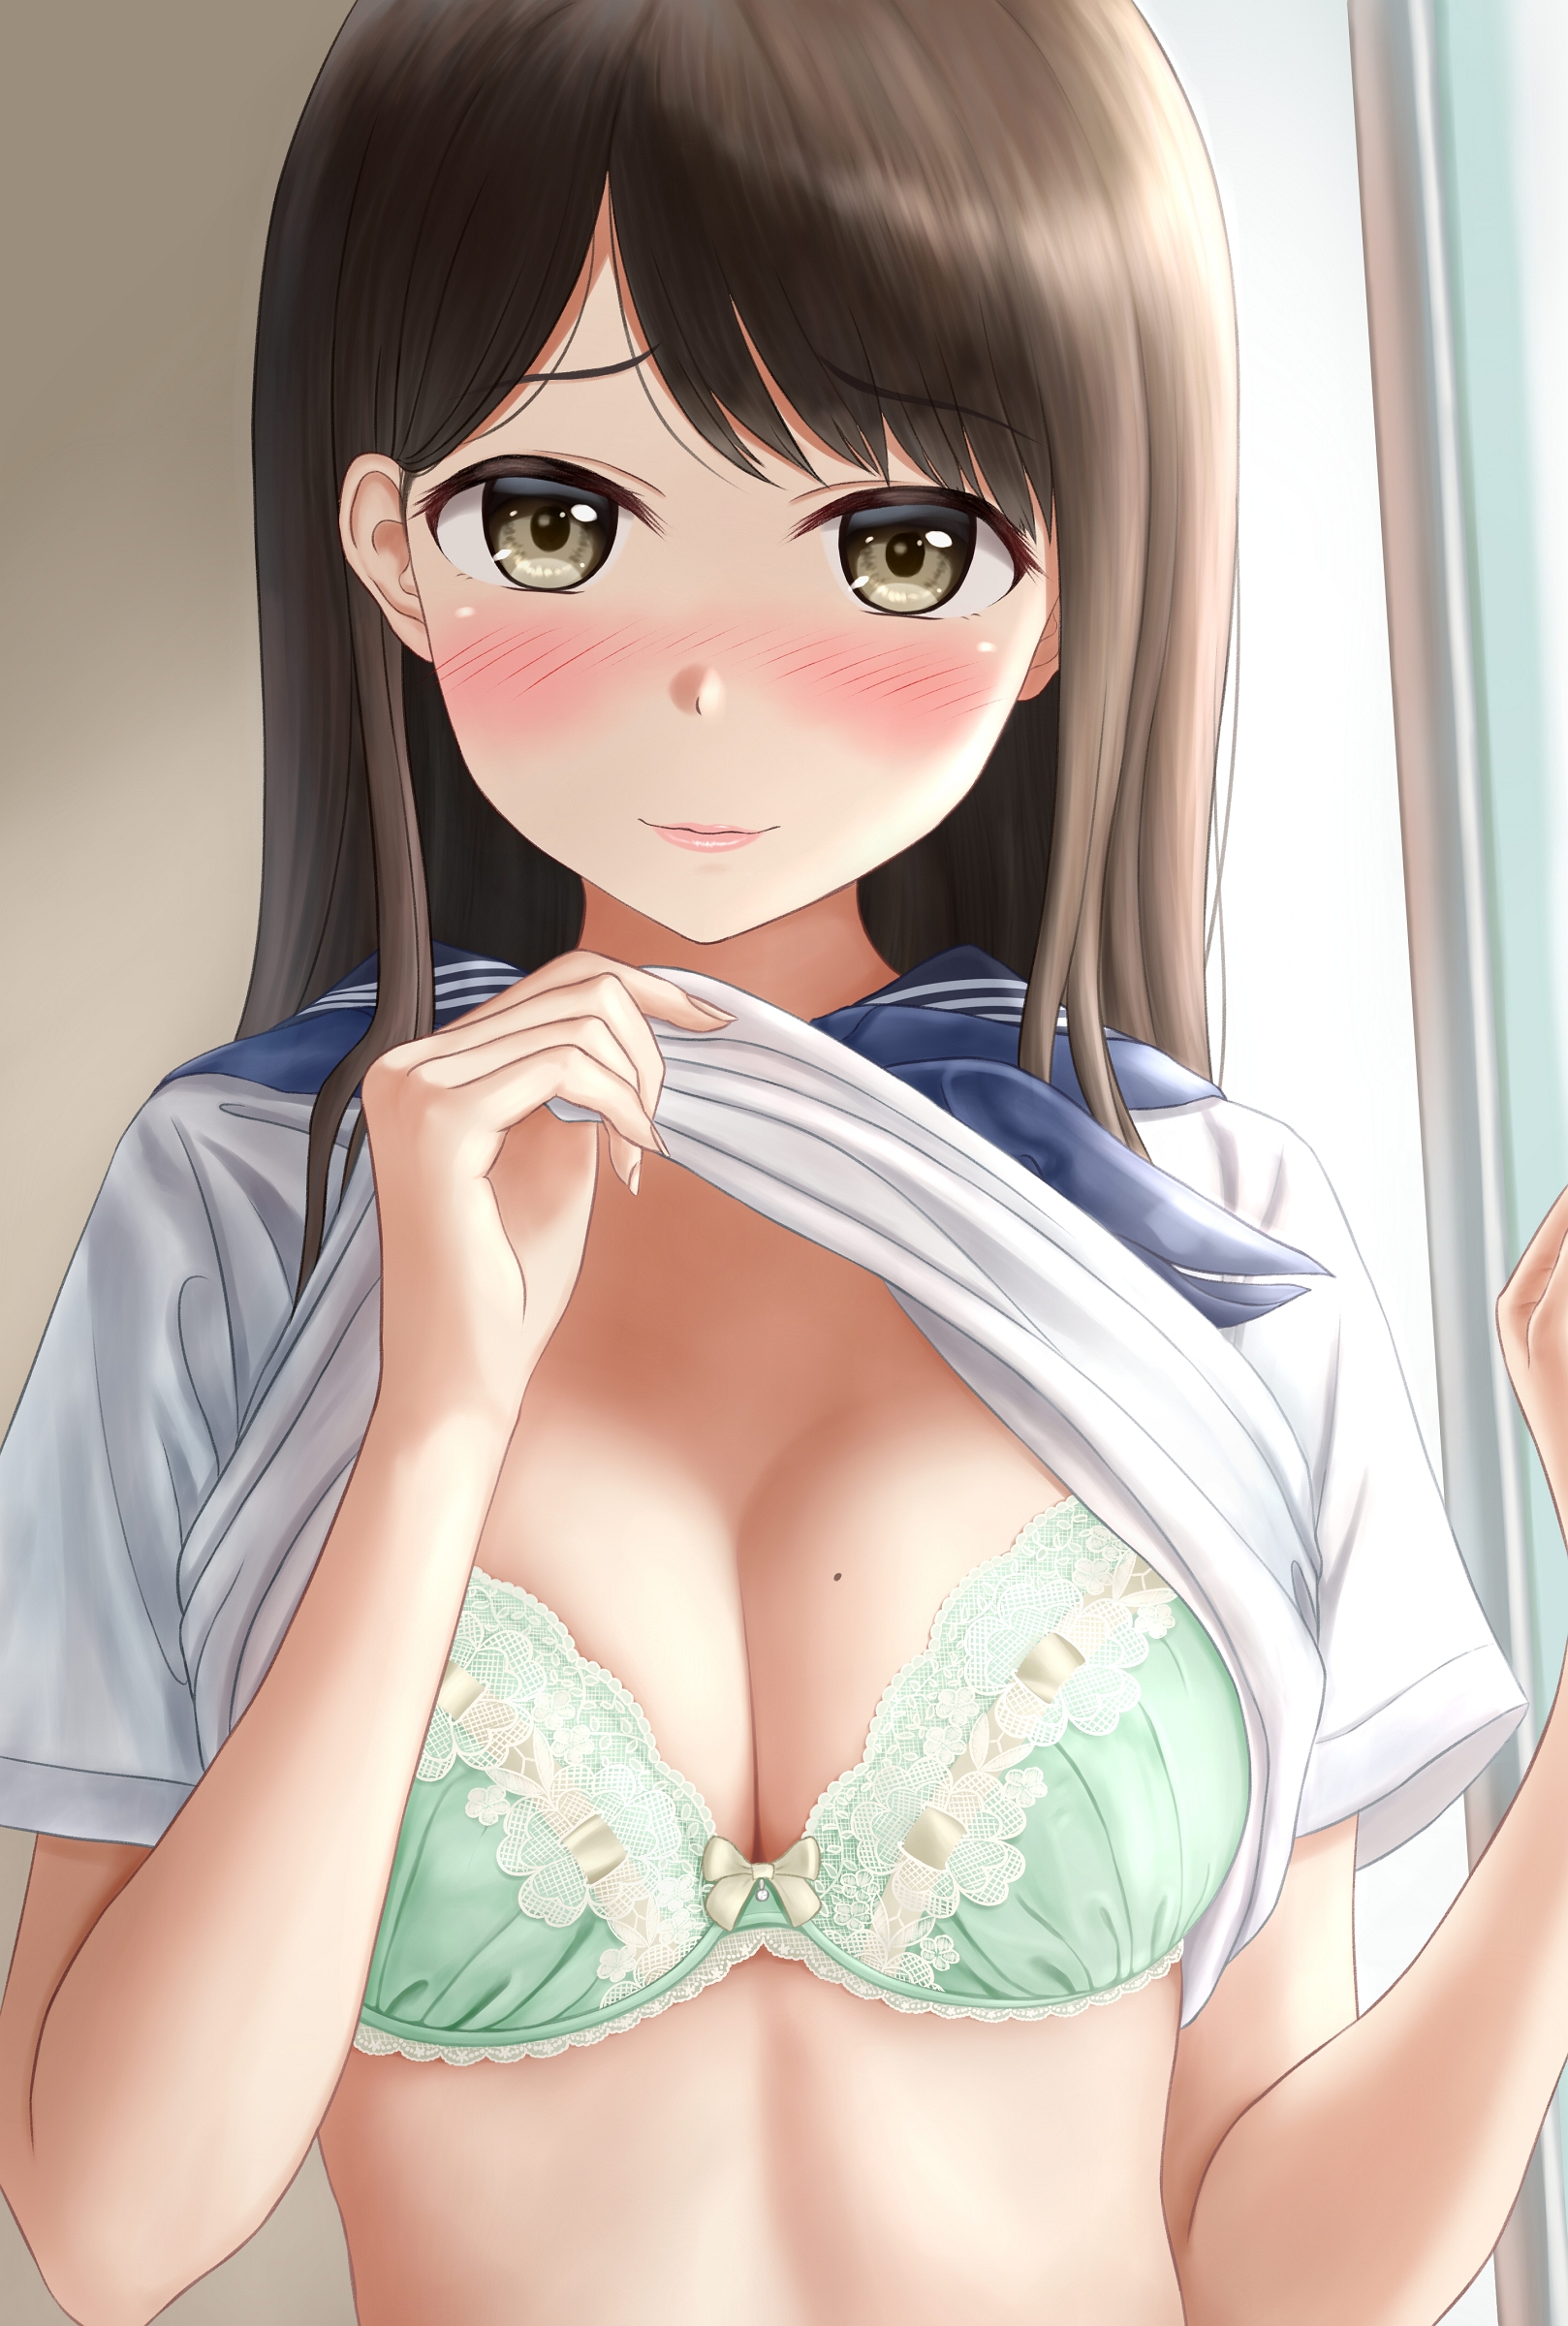 Anime 1618x2400 original characters school uniform schoolgirl bra underwear...